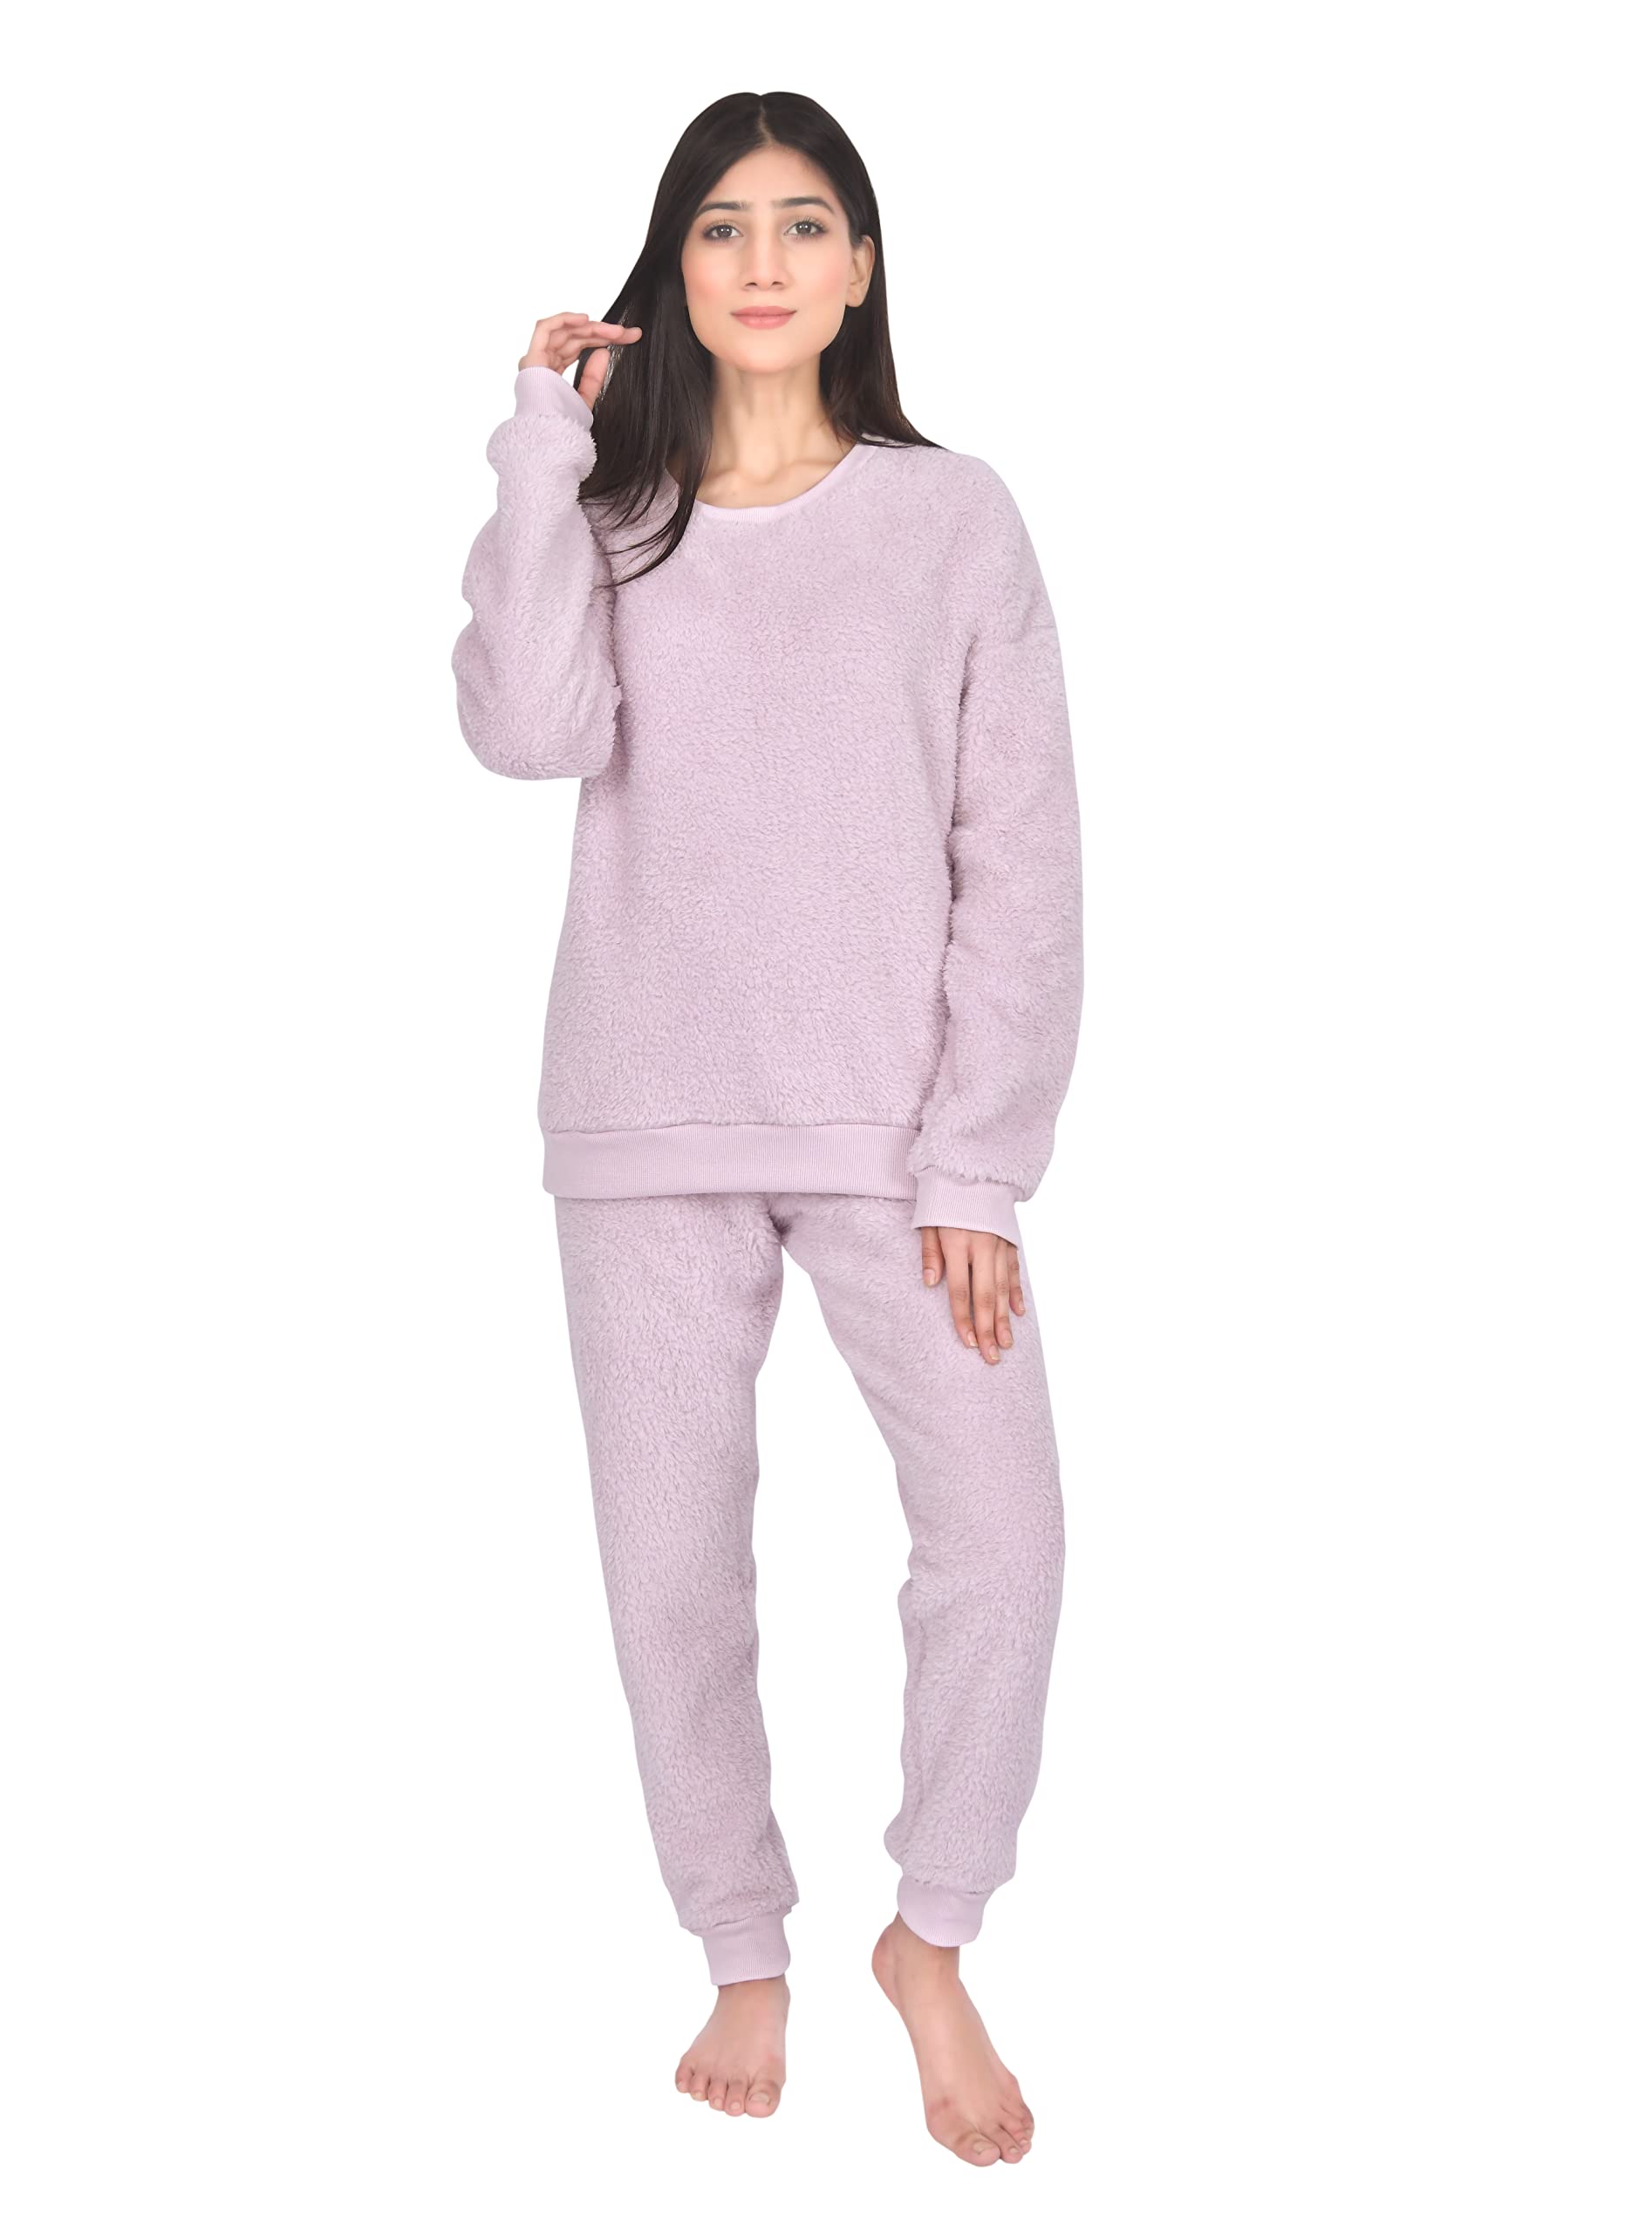 Women's Fluffy Fleece Pyjamas Twosie Soft Teddy Pyjama Set PJs Size 8-22